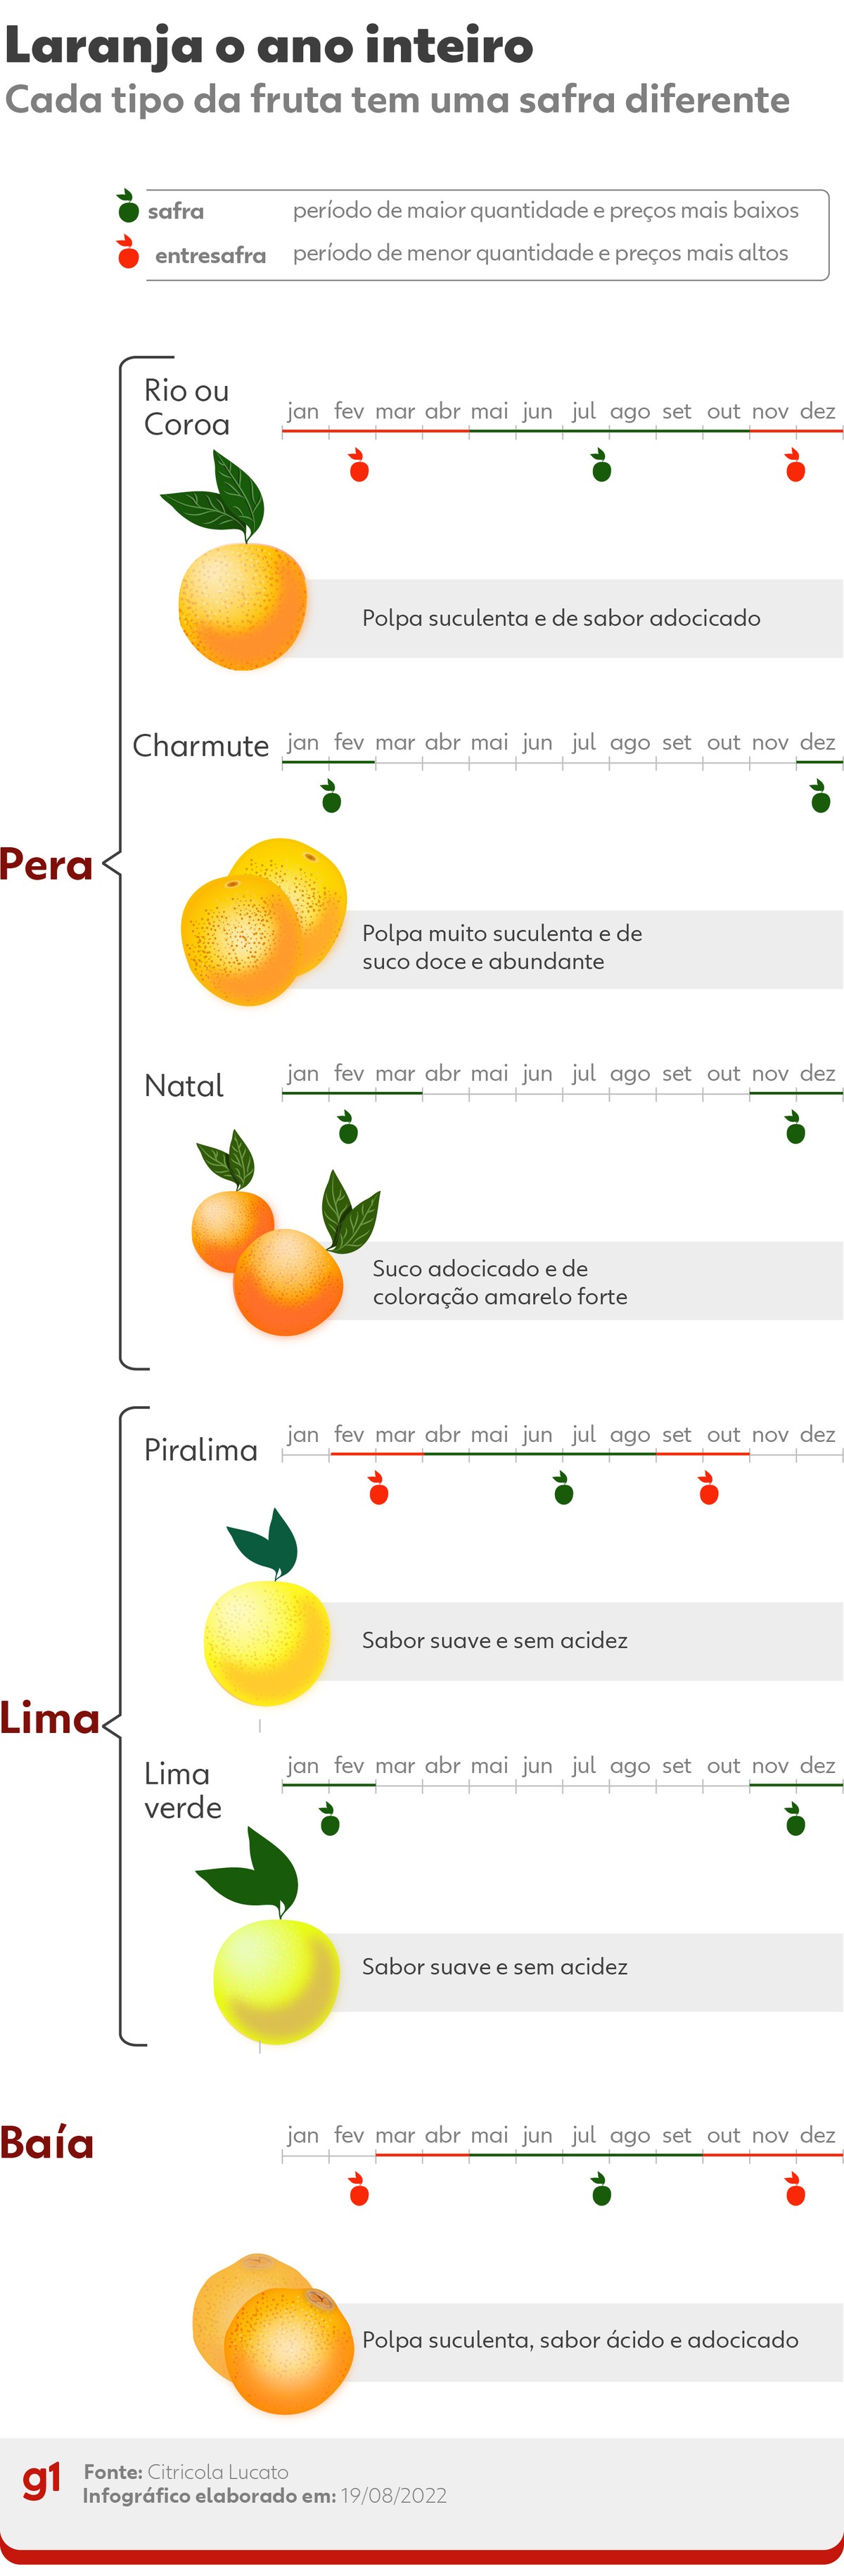 Laranja-pera, lima e baía: veja época de cada uma e quando preços caem |  Agronegócios | G1